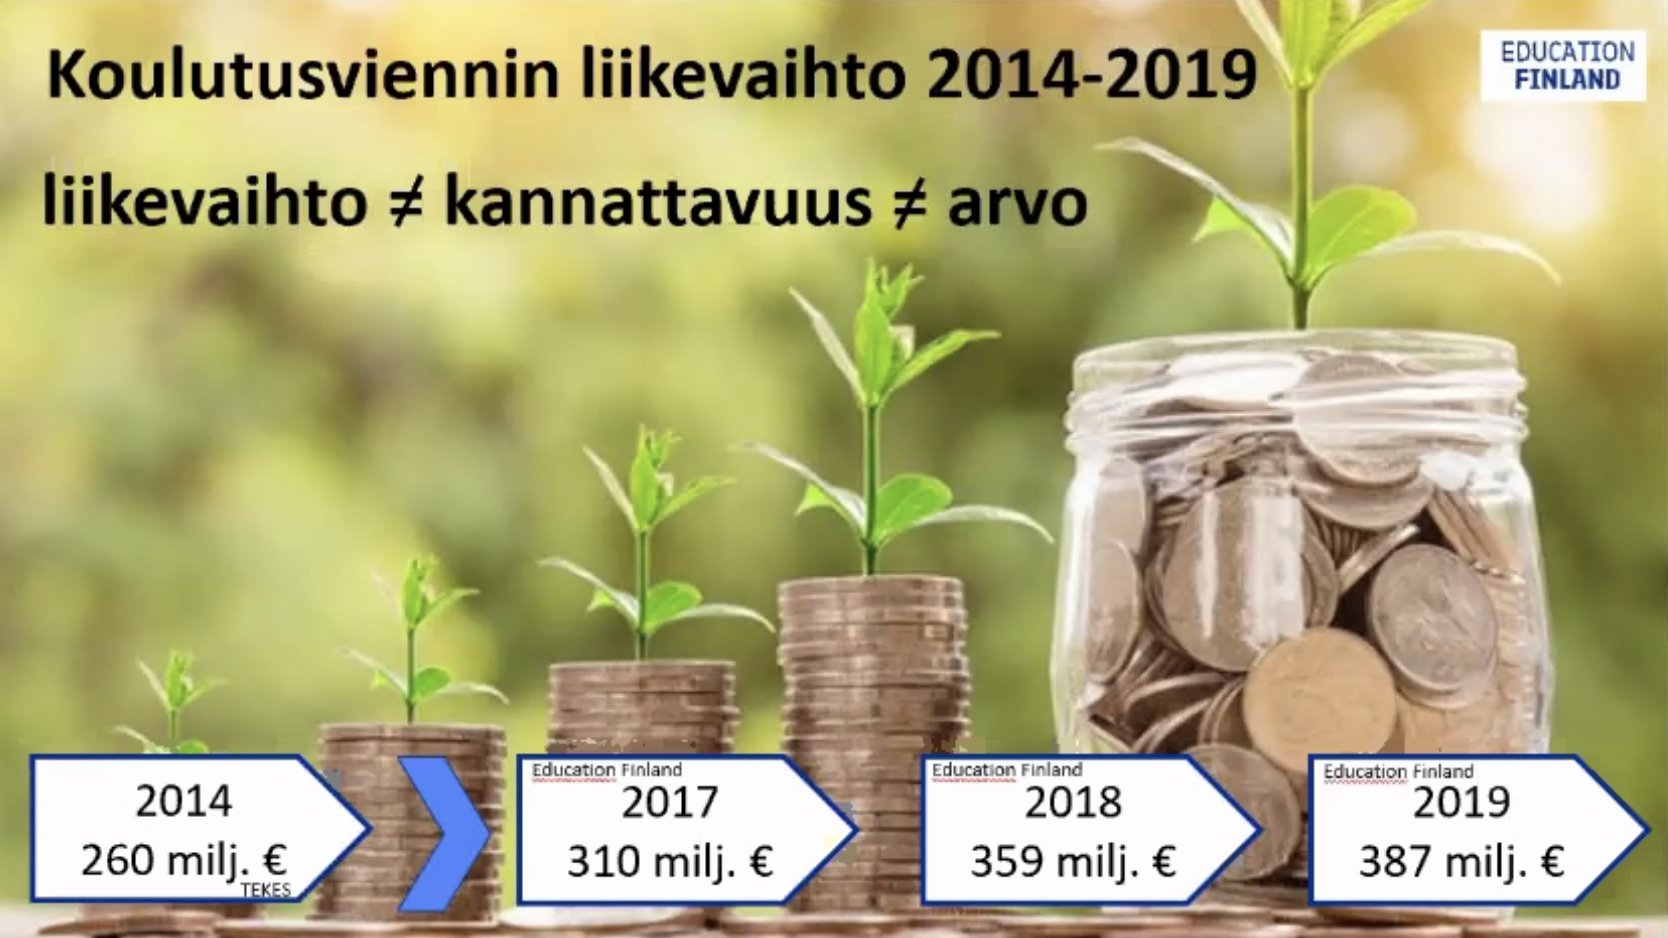 Suomalaisen koulutusviennin liikevaihto on kasvanut vuoden 2014 260 miljoonasta vuoden 2019 387 miljoonaan